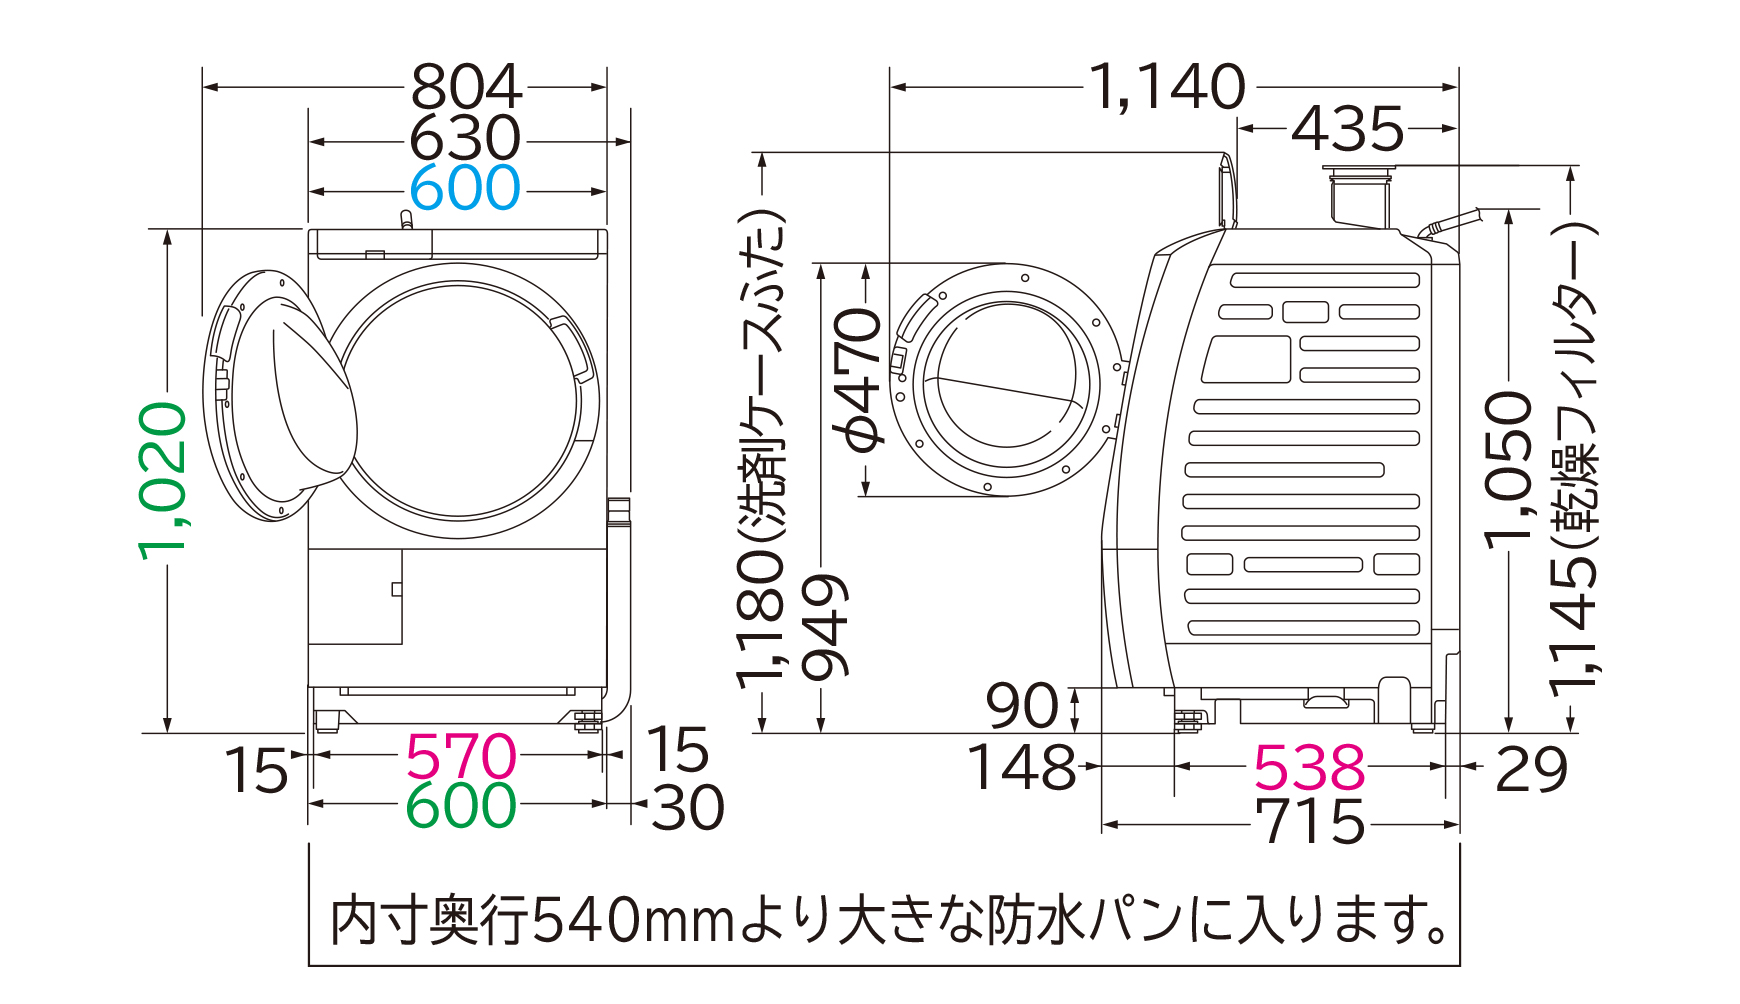 洗濯乾燥機 BD-SV110A ： 洗濯機・衣類乾燥機 ： 日立の家電品